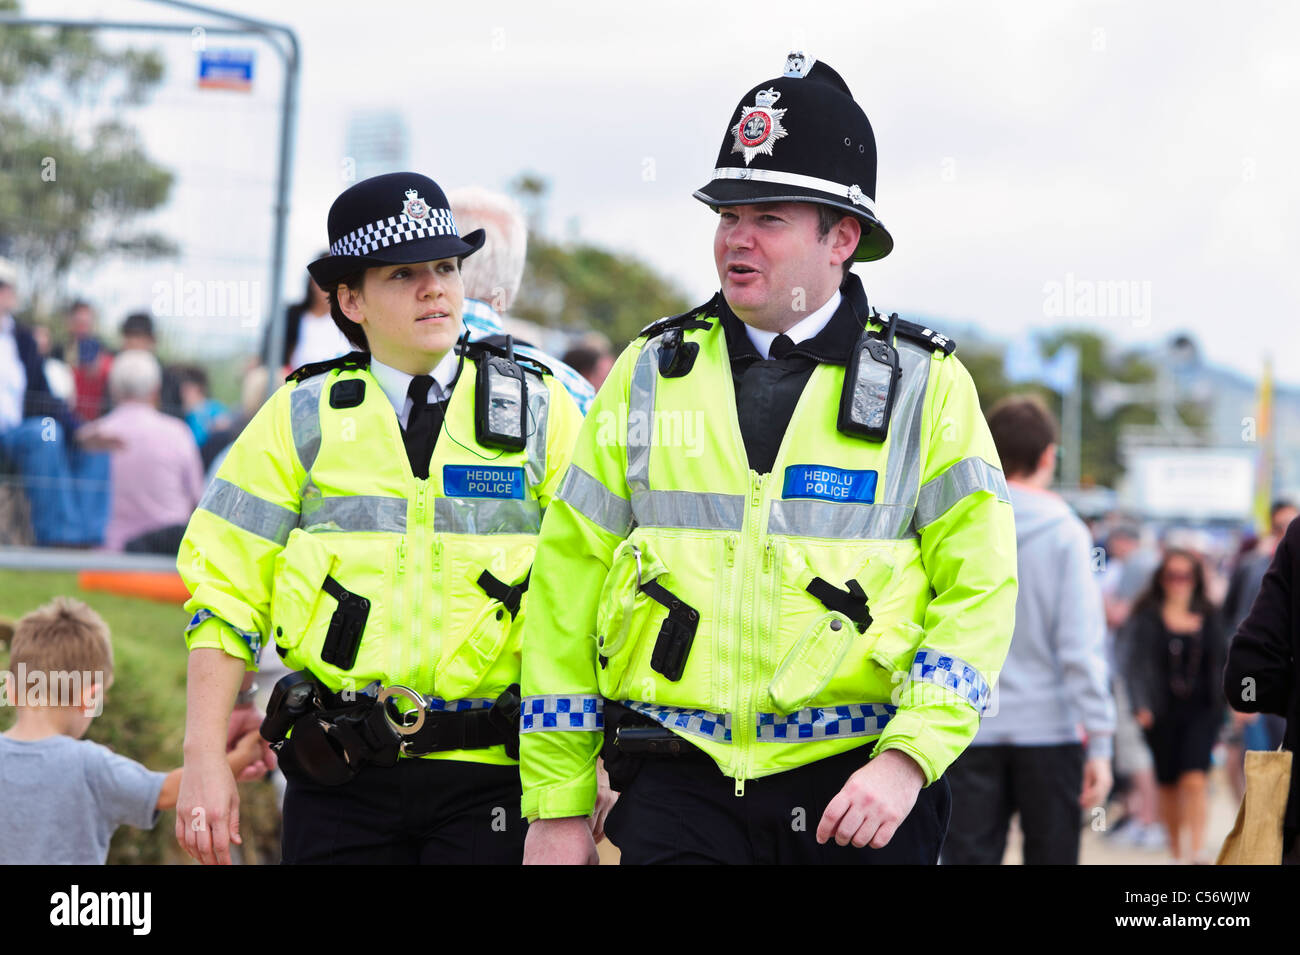 Zwei Polizisten patrouillieren im Takt, National Air show, Swansea, Wales, UK. Polizistin & Mann Heddlu Walisisch Polizei zu Fuß. Stockfoto